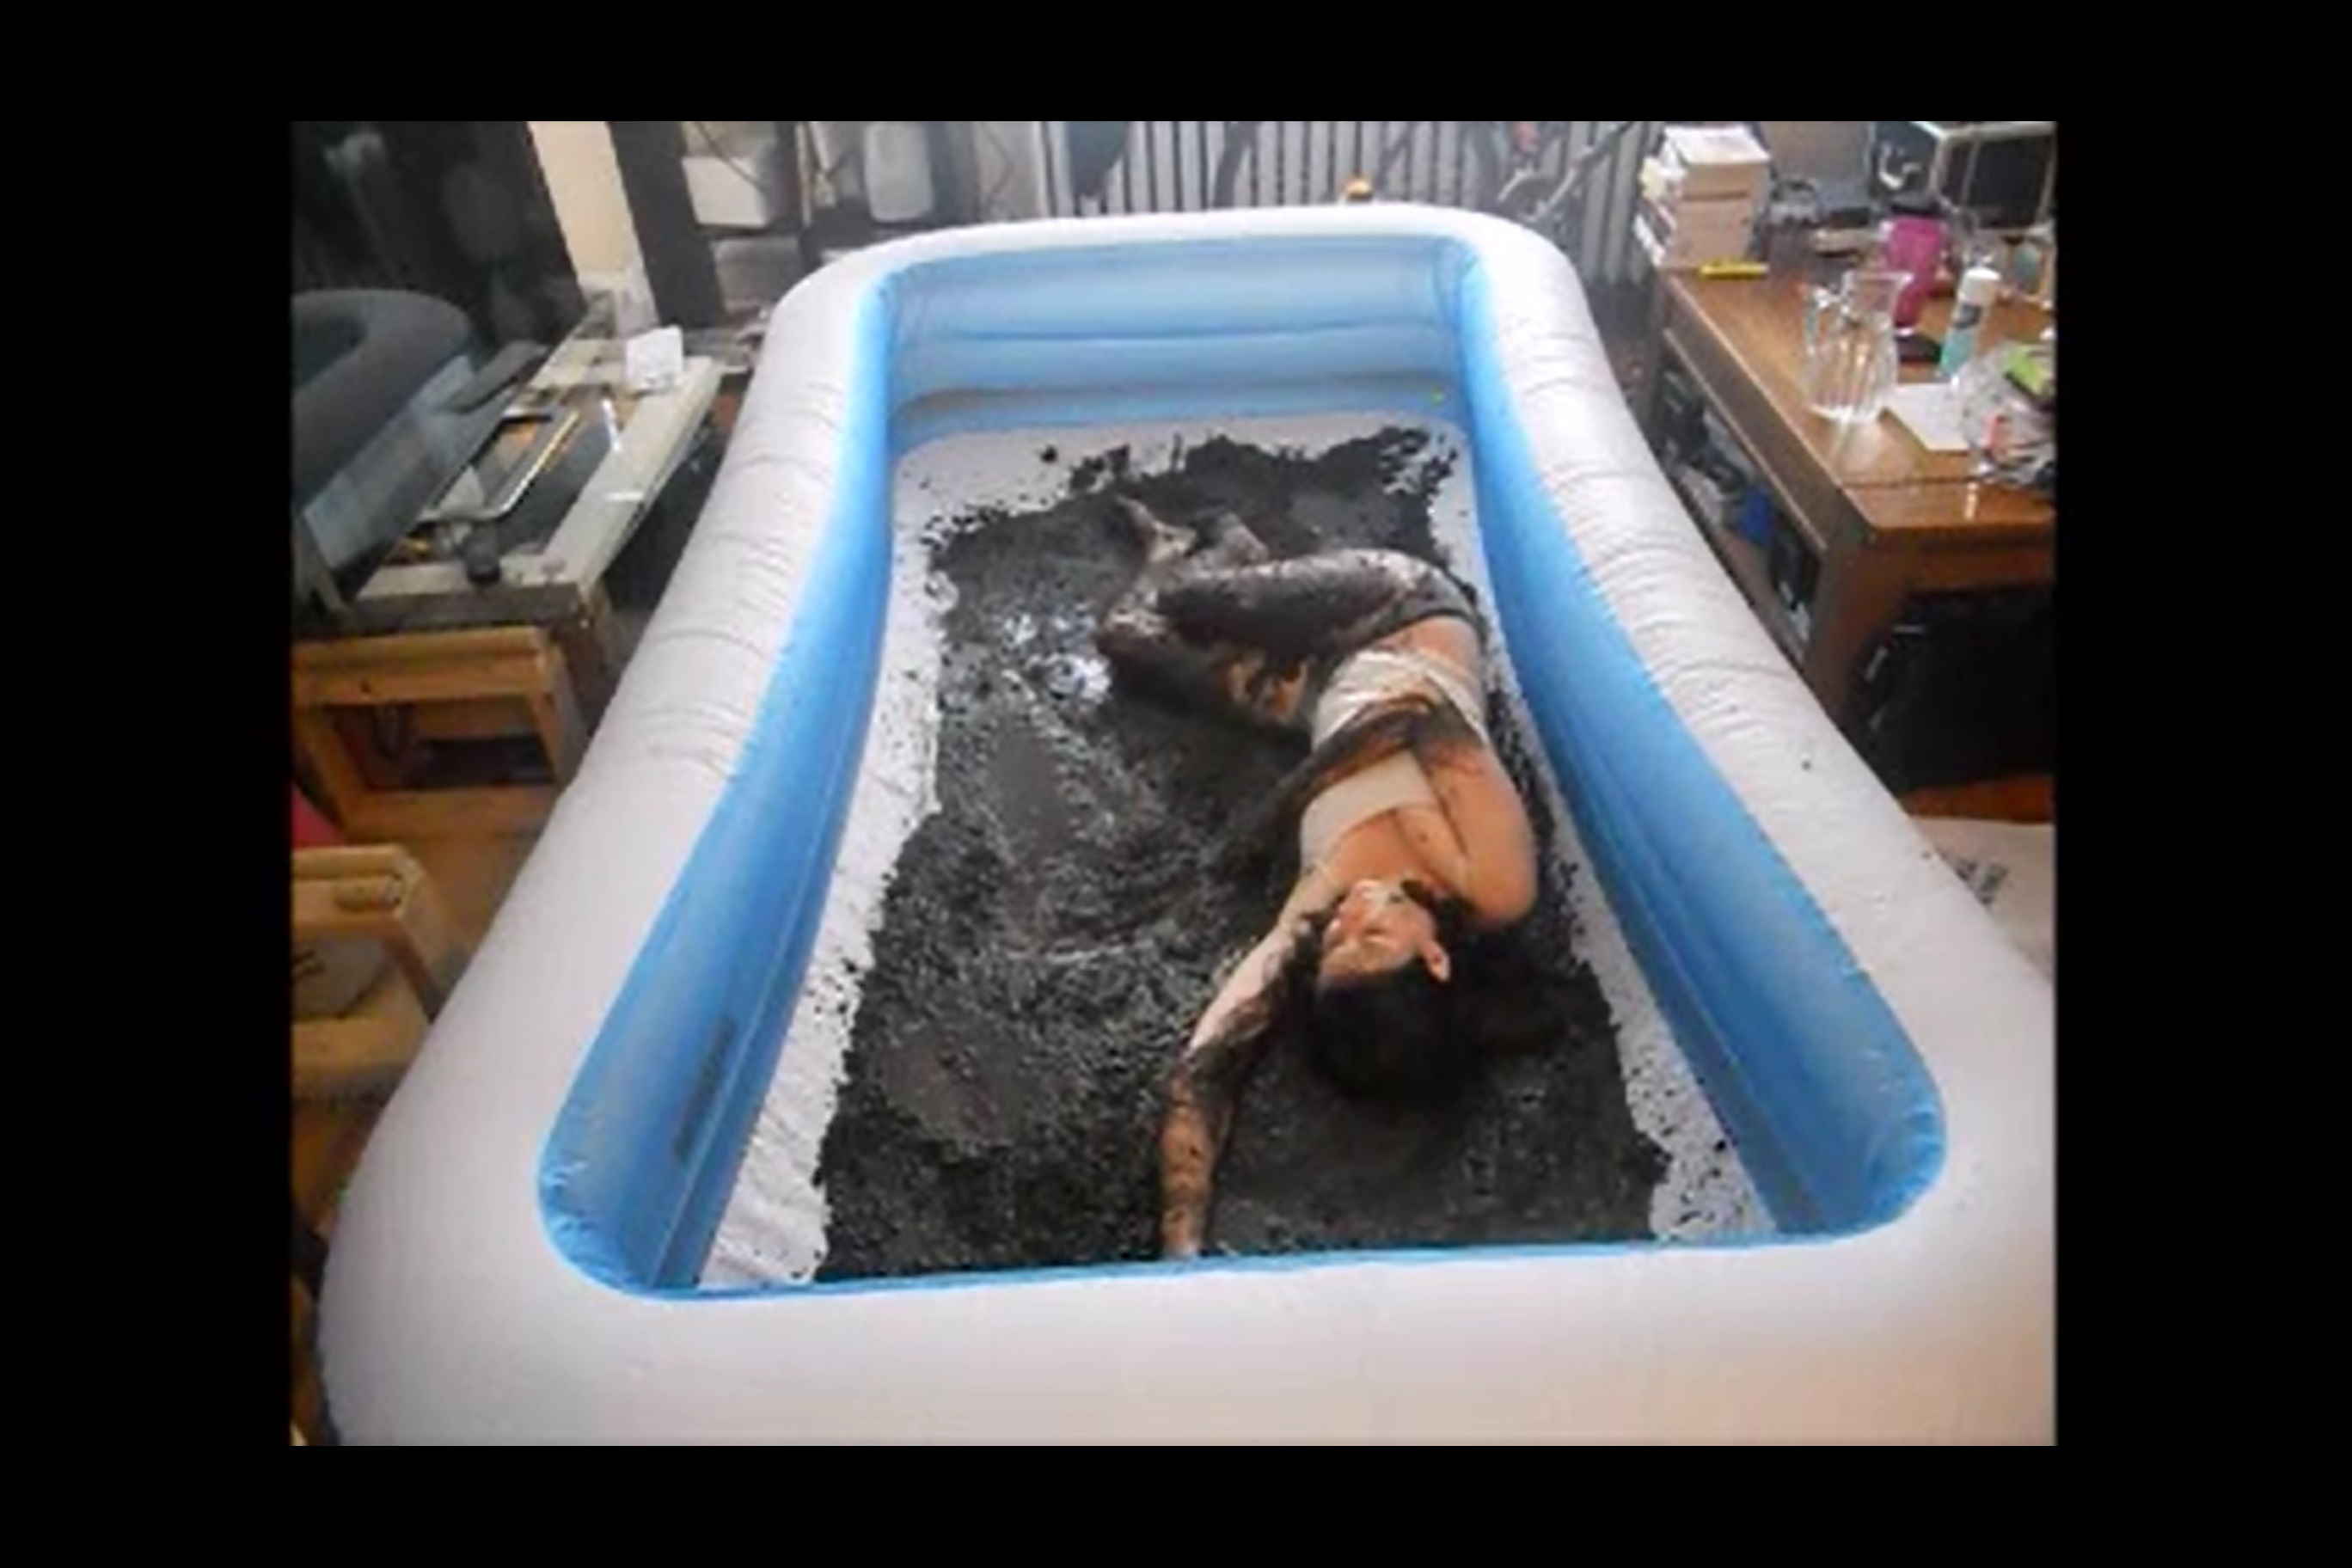 photo of author asleep in muddy kiddie pool